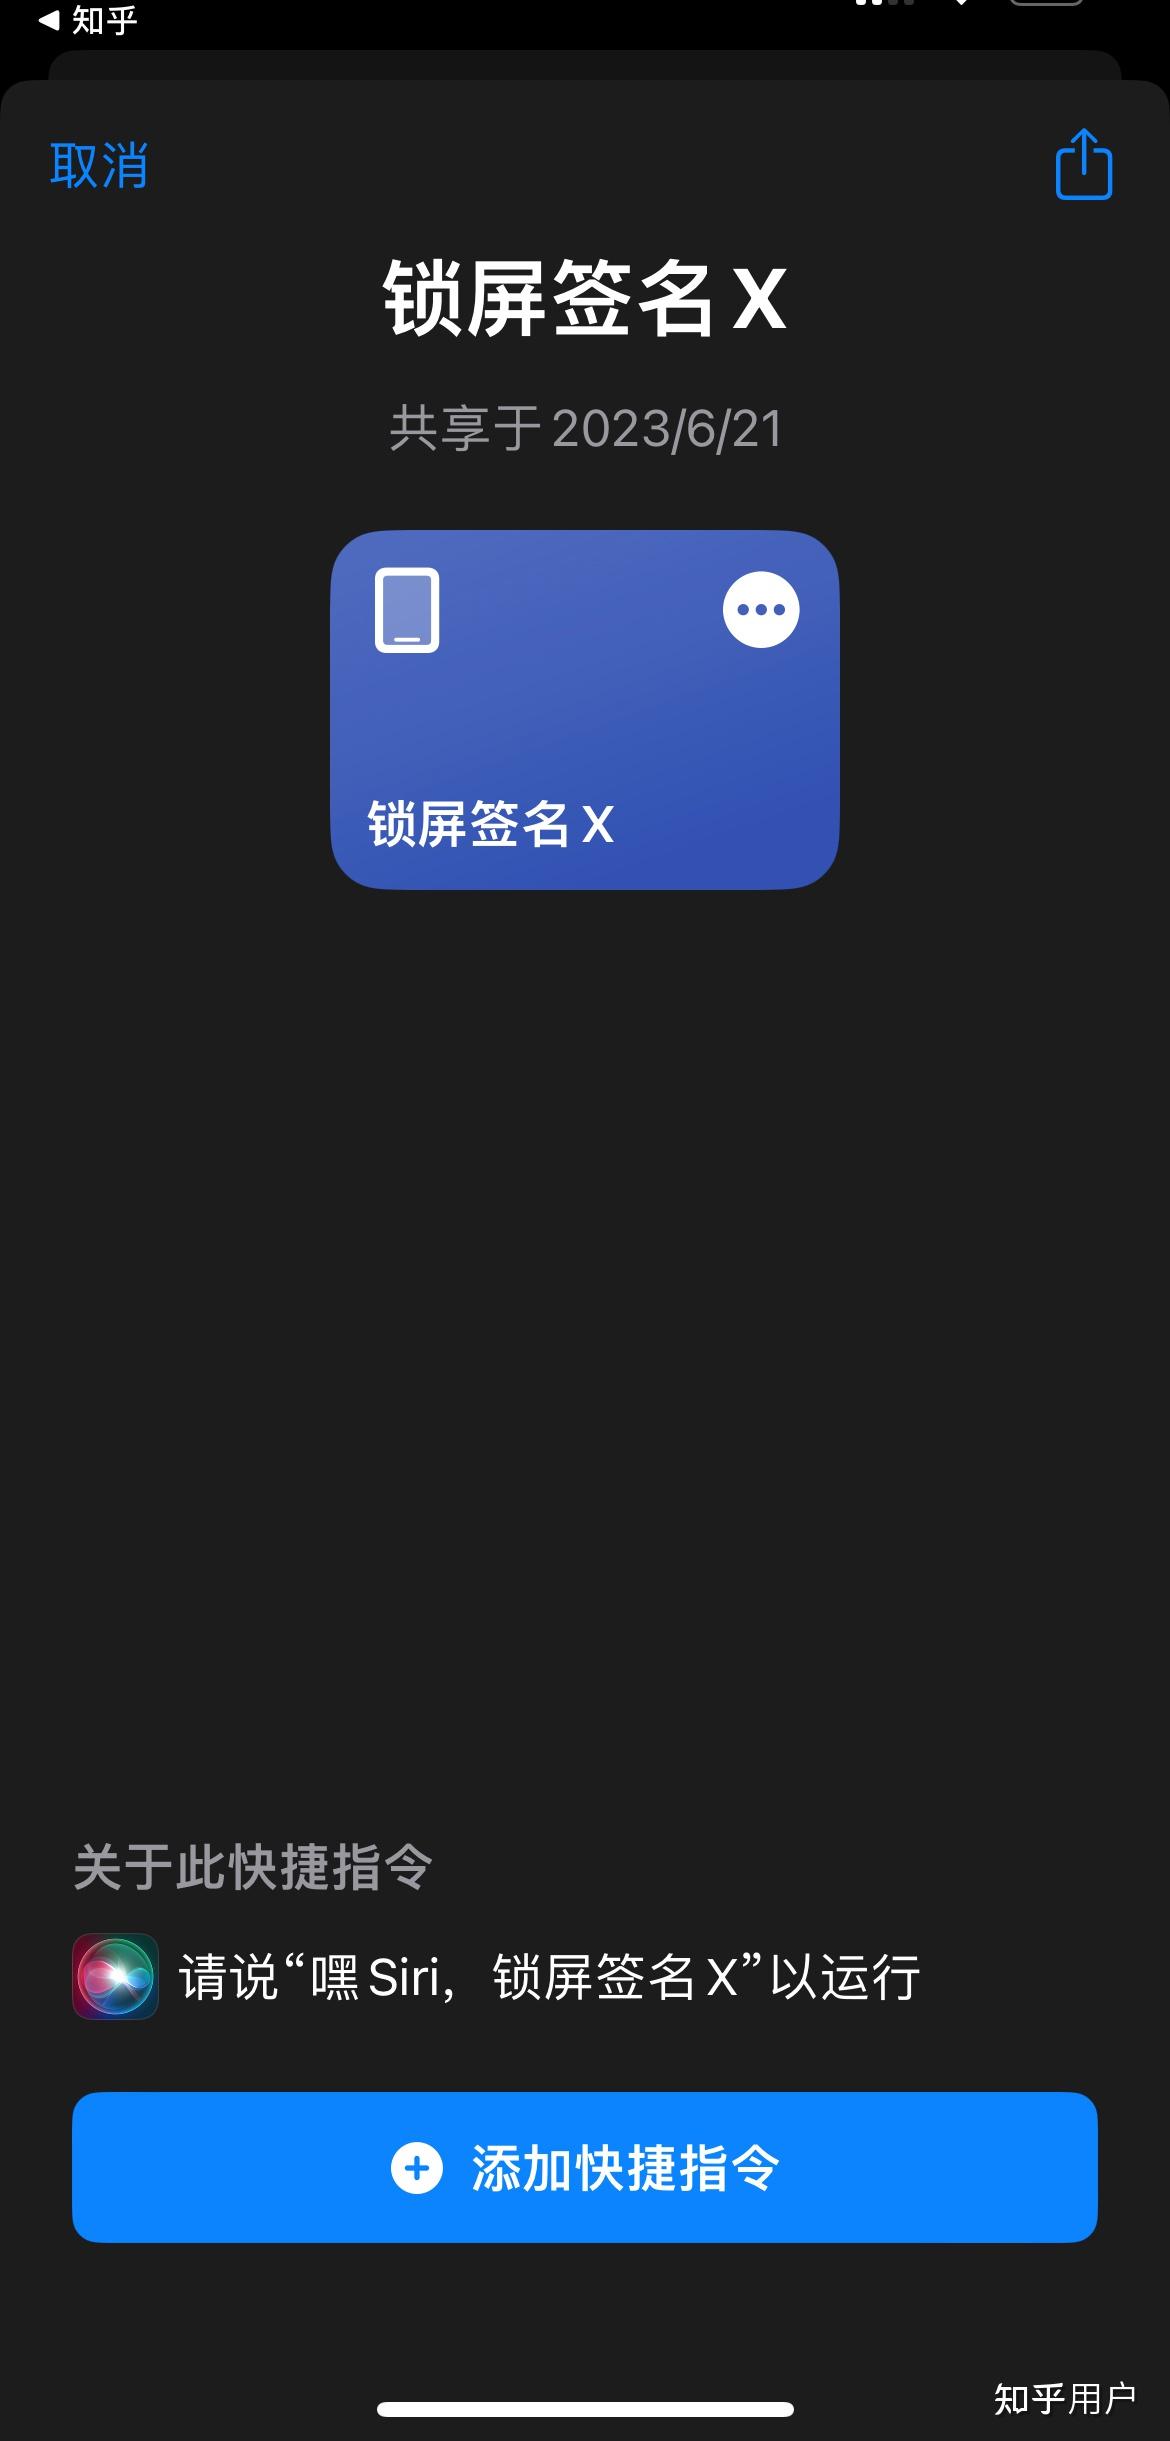 LockDroid 安卓锁屏解锁 | 雷锋源 | 最简洁的中文源